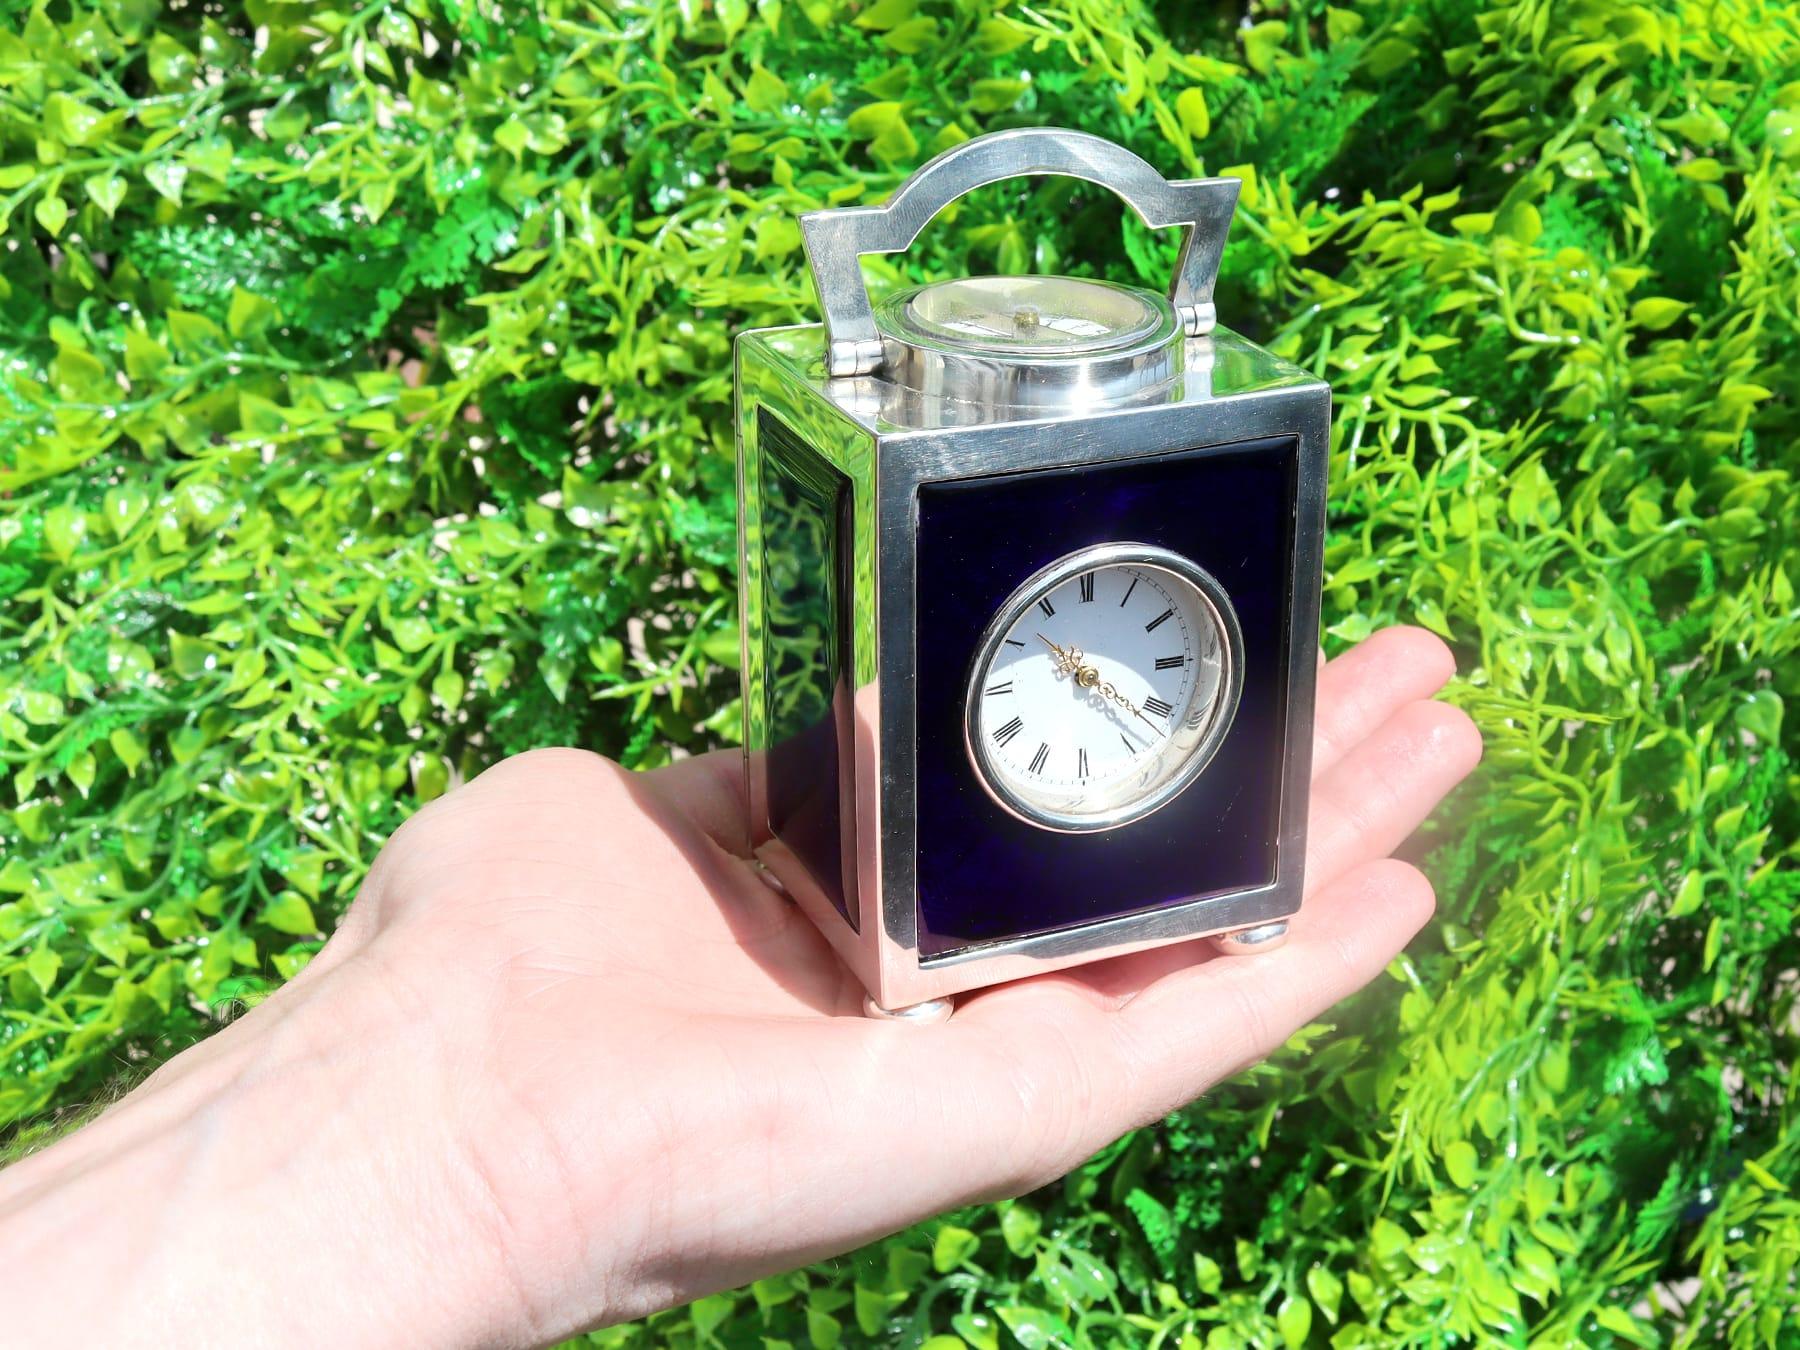 Eine außergewöhnliche, feine und beeindruckende, große antike viktorianische englische Sterling-Silber-Reiseuhr oder Kompass; eine Ergänzung zu unserer Silber-Uhrensammlung.

Diese außergewöhnliche antike viktorianische Reiseuhr aus Sterlingsilber